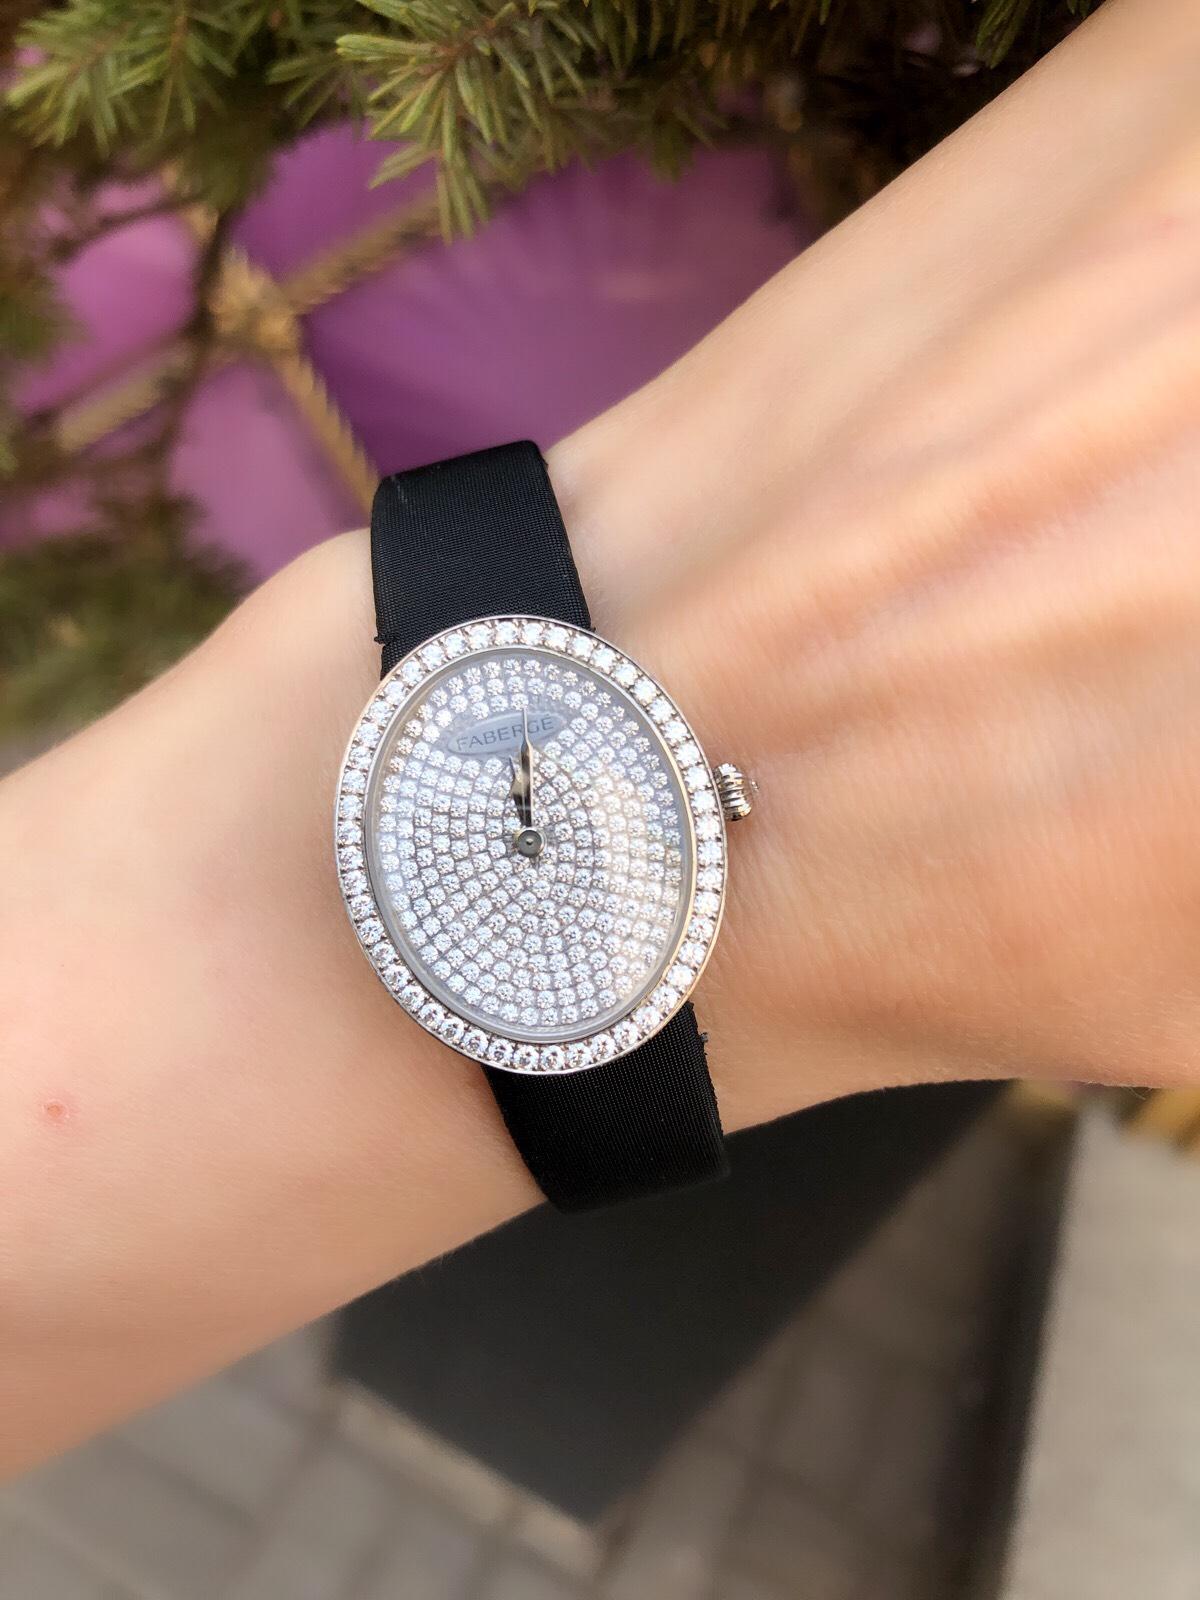 Anastasia Diamond Damenuhren
113WA217/1
Fabergé-Uhren verkörpern den charakteristischen Perfektionismus und
von Peter Carl Fabergé, der auf geniale Art und Weise den Weg für die
Uhren und gelegentlich auch Armbanduhren in sein